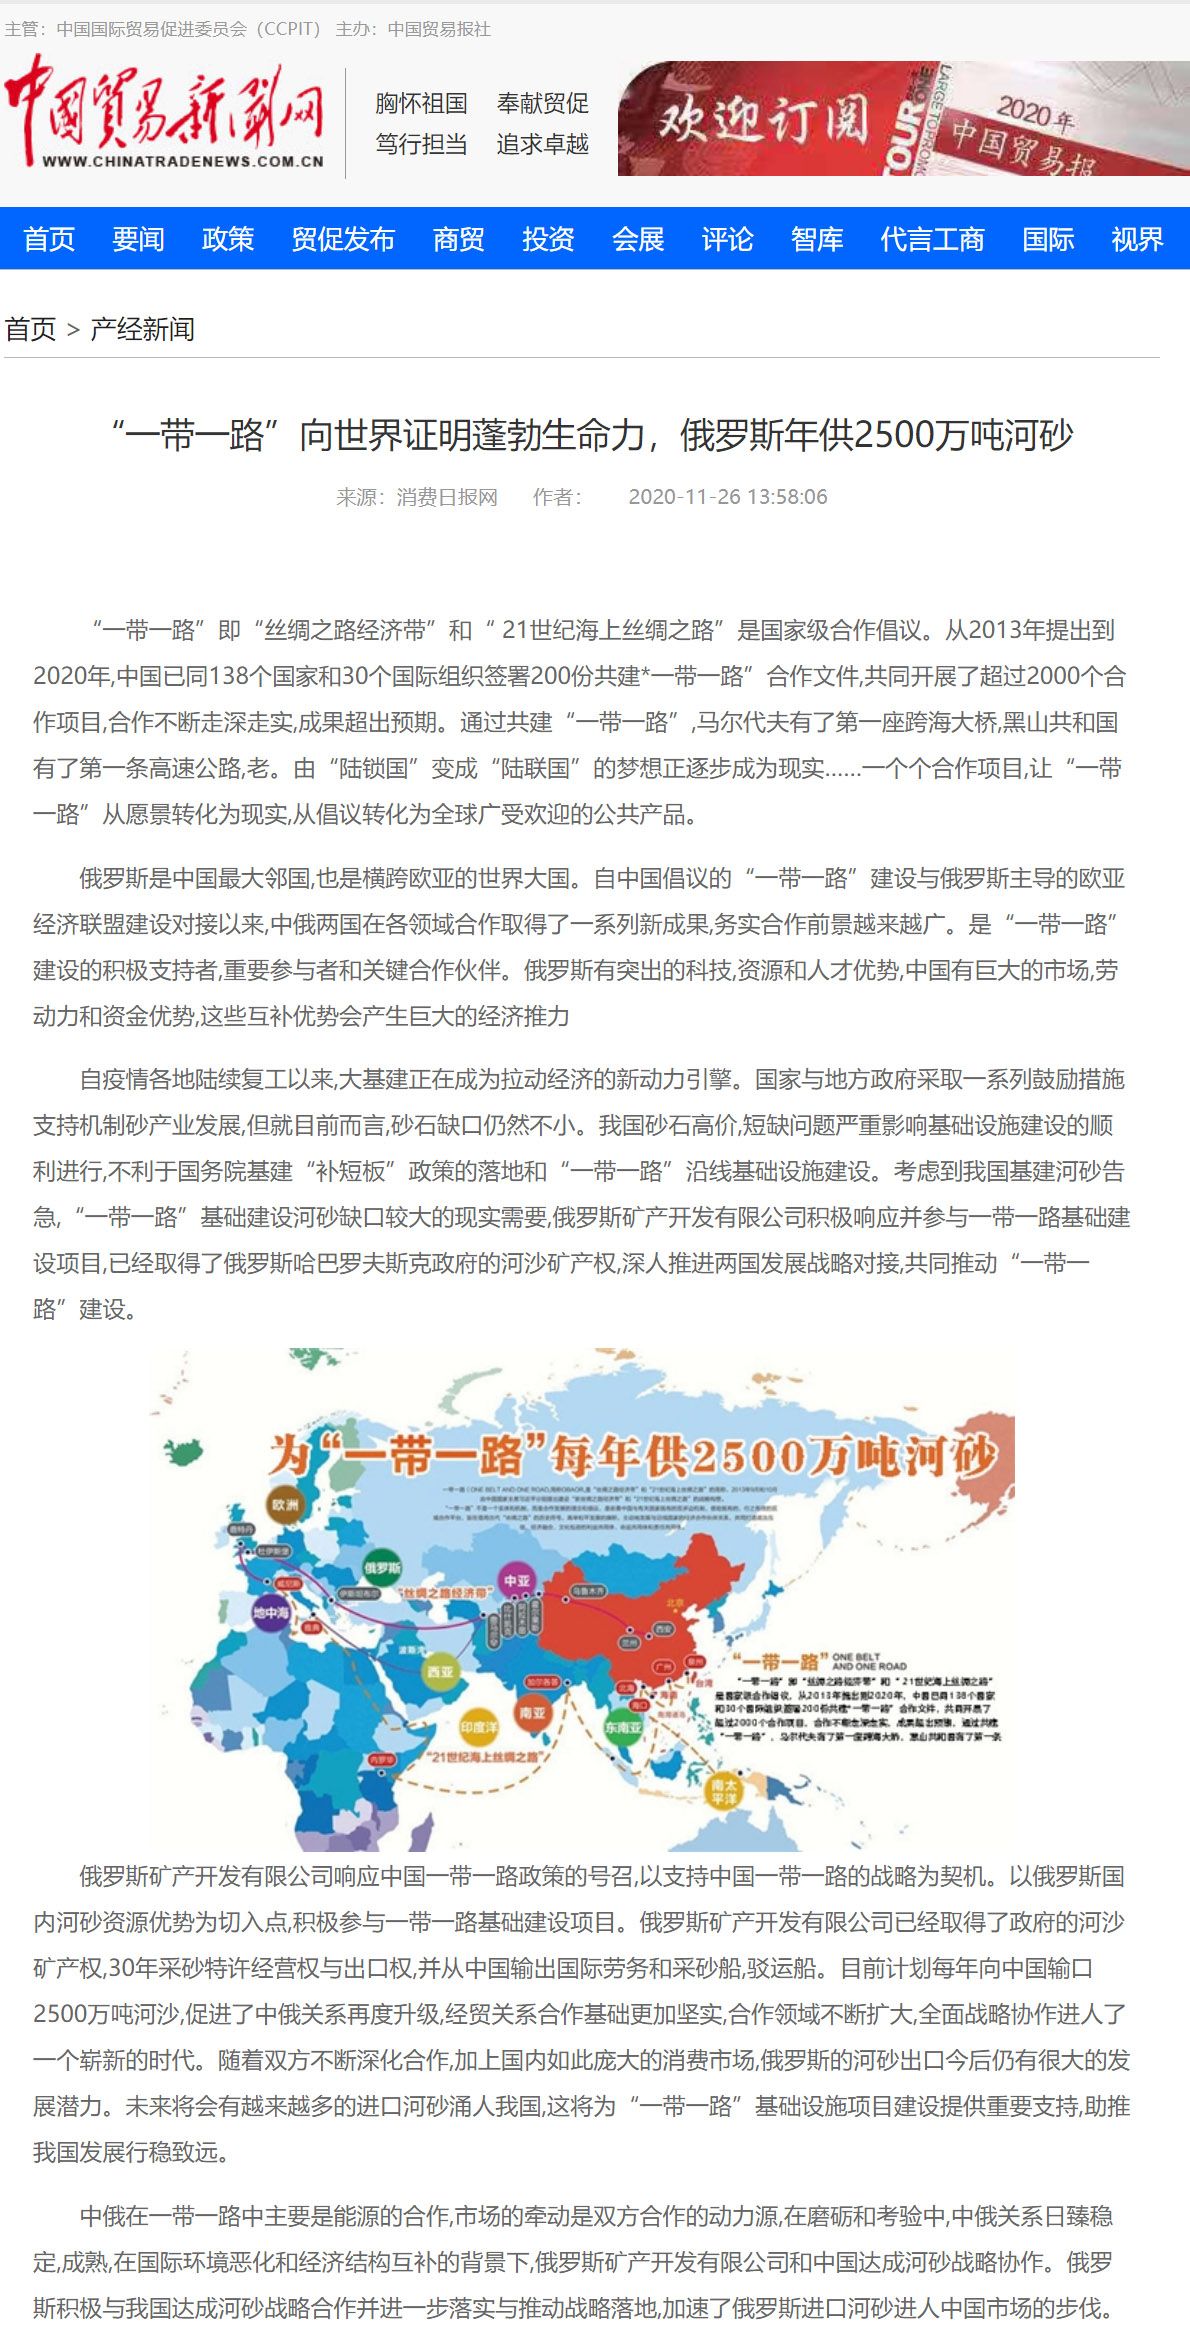 中国贸易报社《中国贸易新闻网》